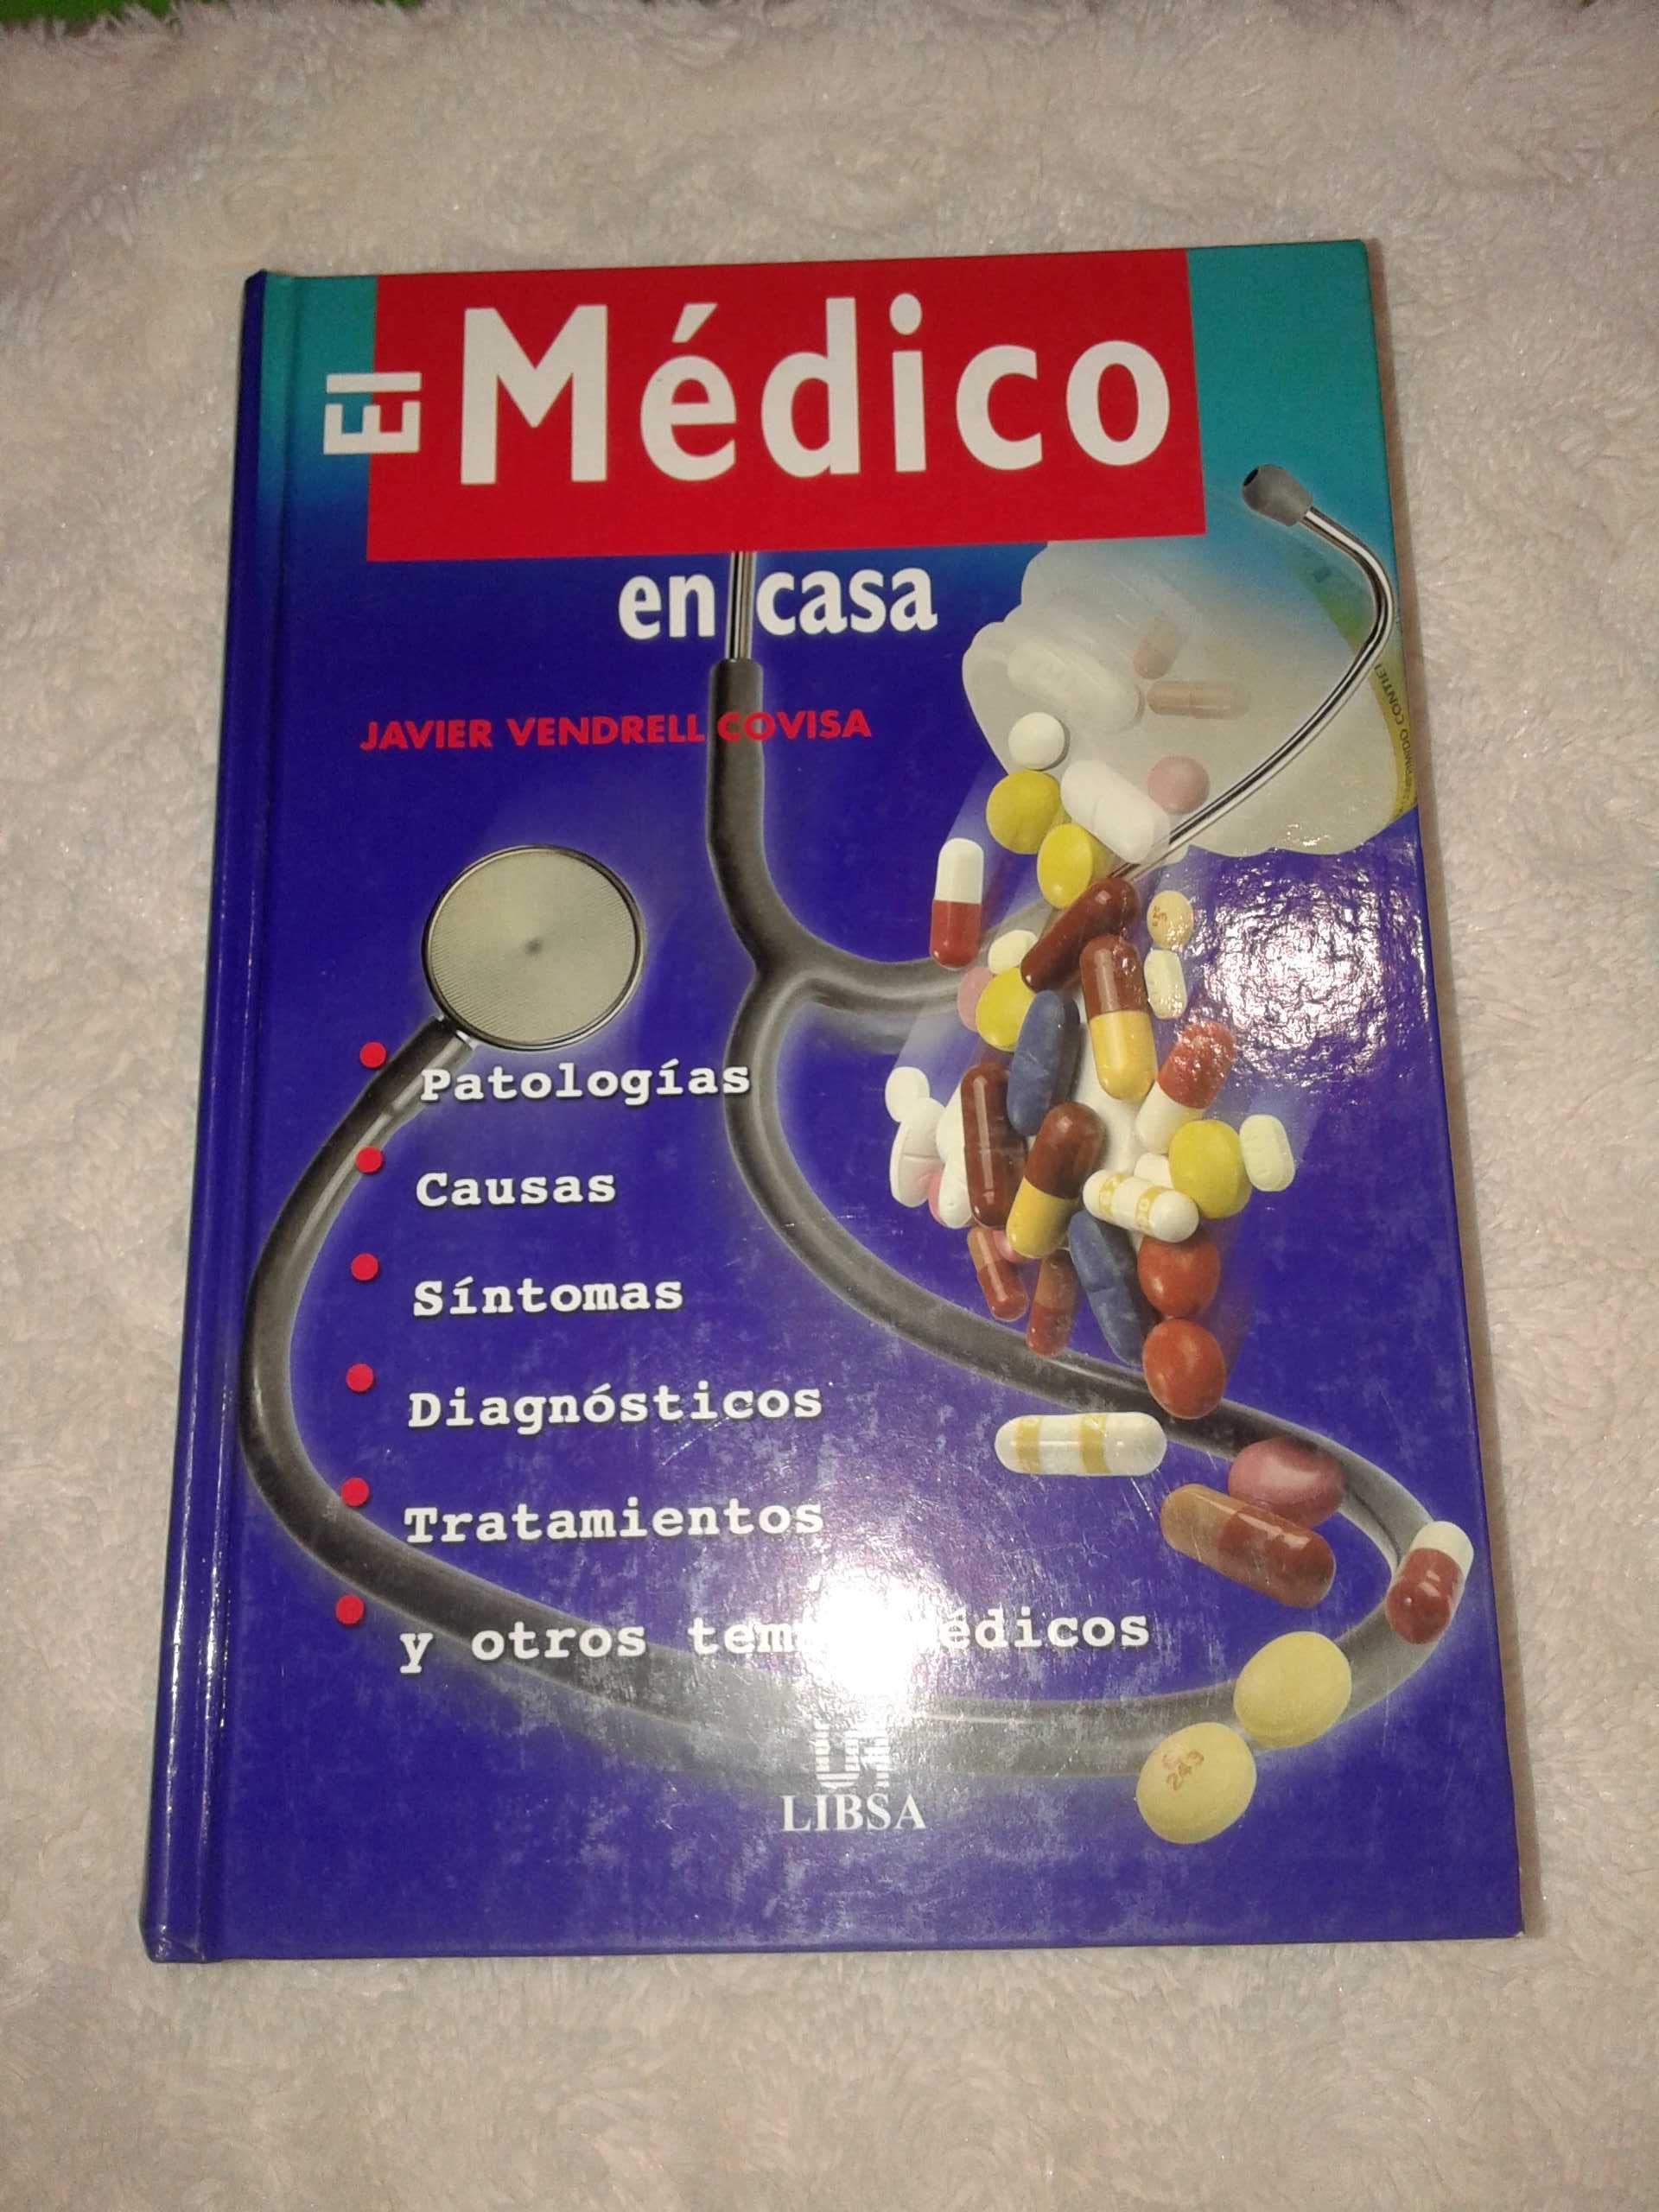 El Medico en casa - Javier Vendrell Covisa